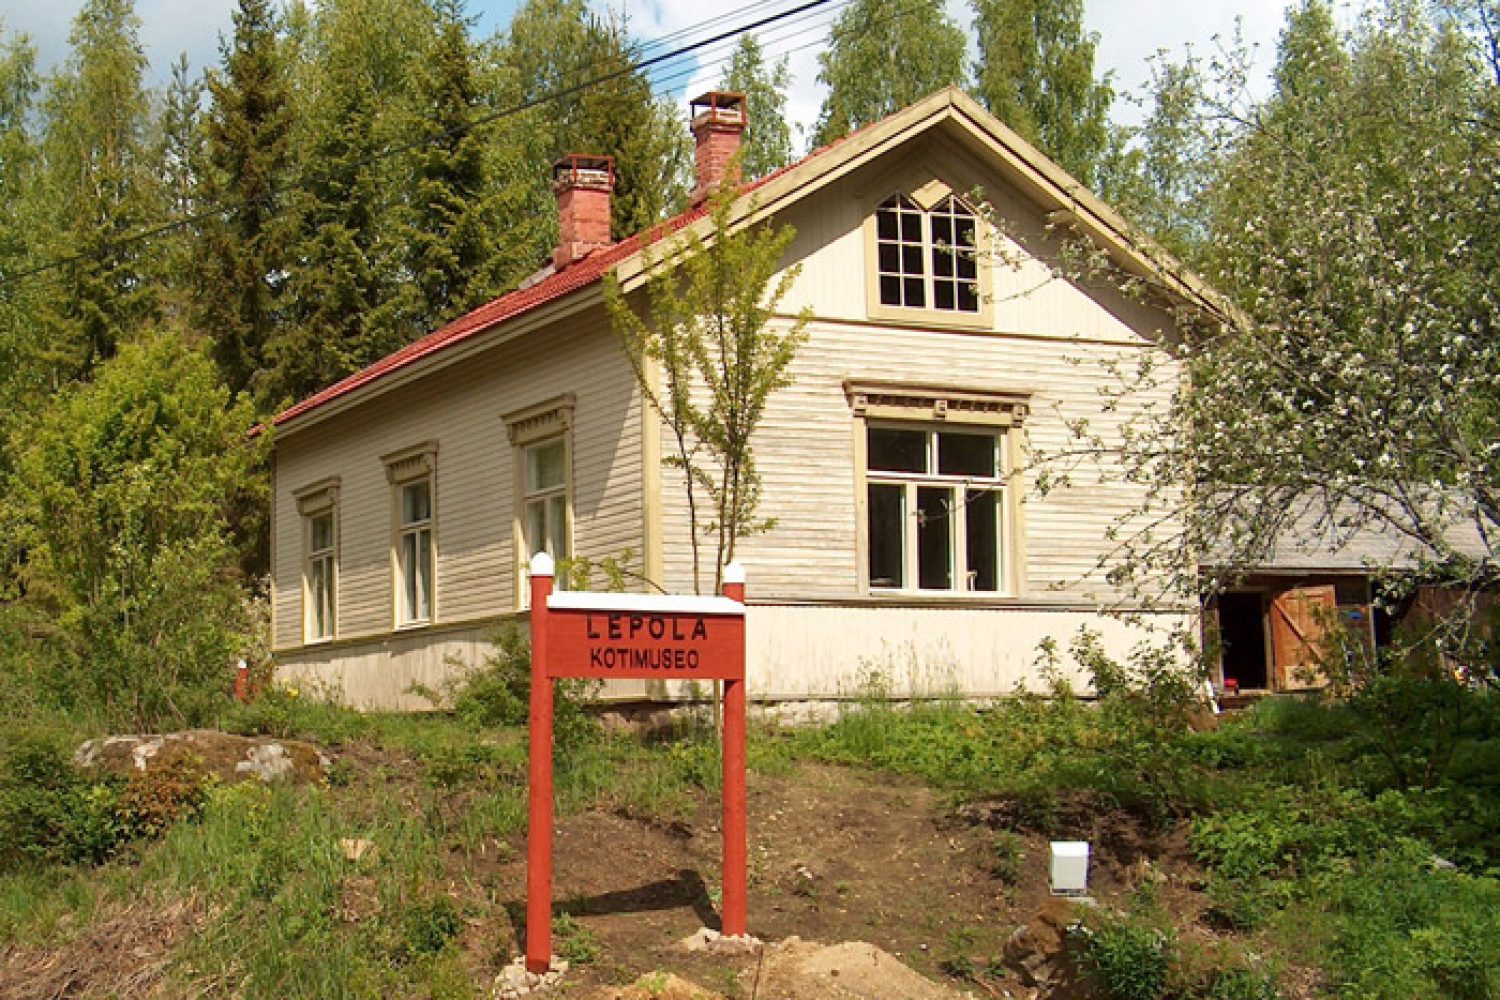 Lepolan päärakennus tieltä kuvattuna keväällä. Edessä punavalkoinen, puusta valmistettu viitta, jossa lukee Lepola kotimuseo.